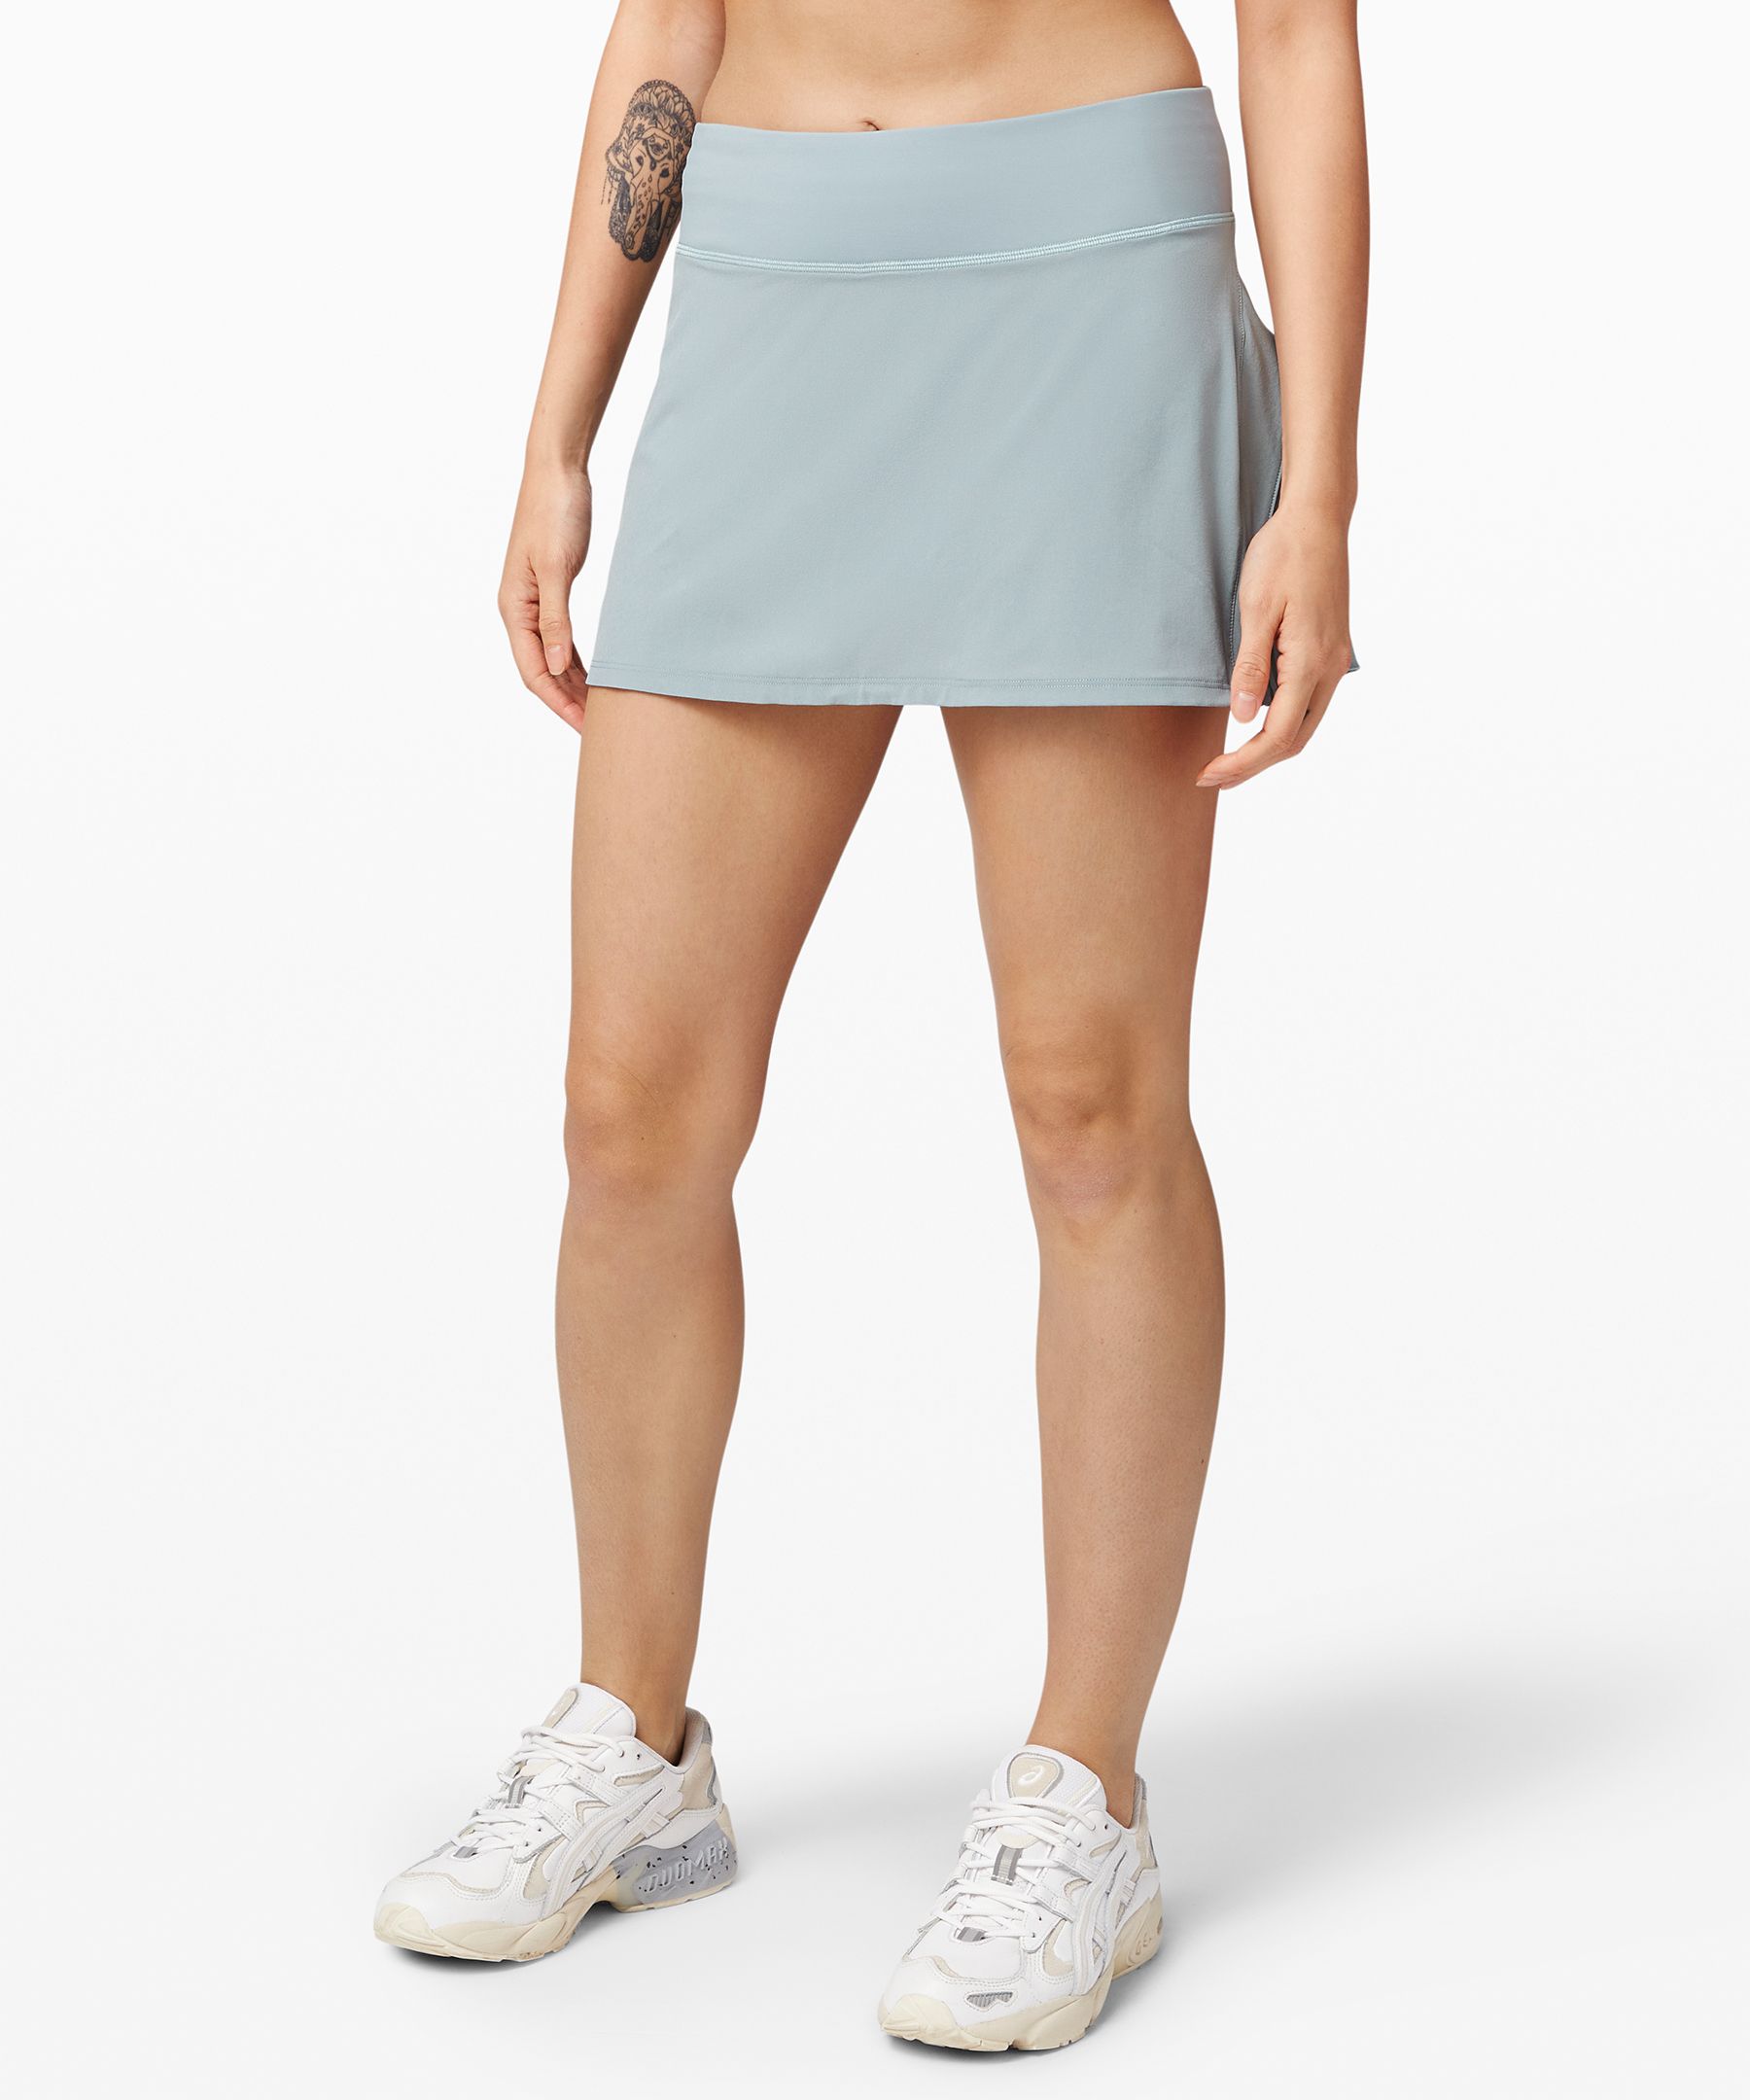 lululemon white tennis skirt